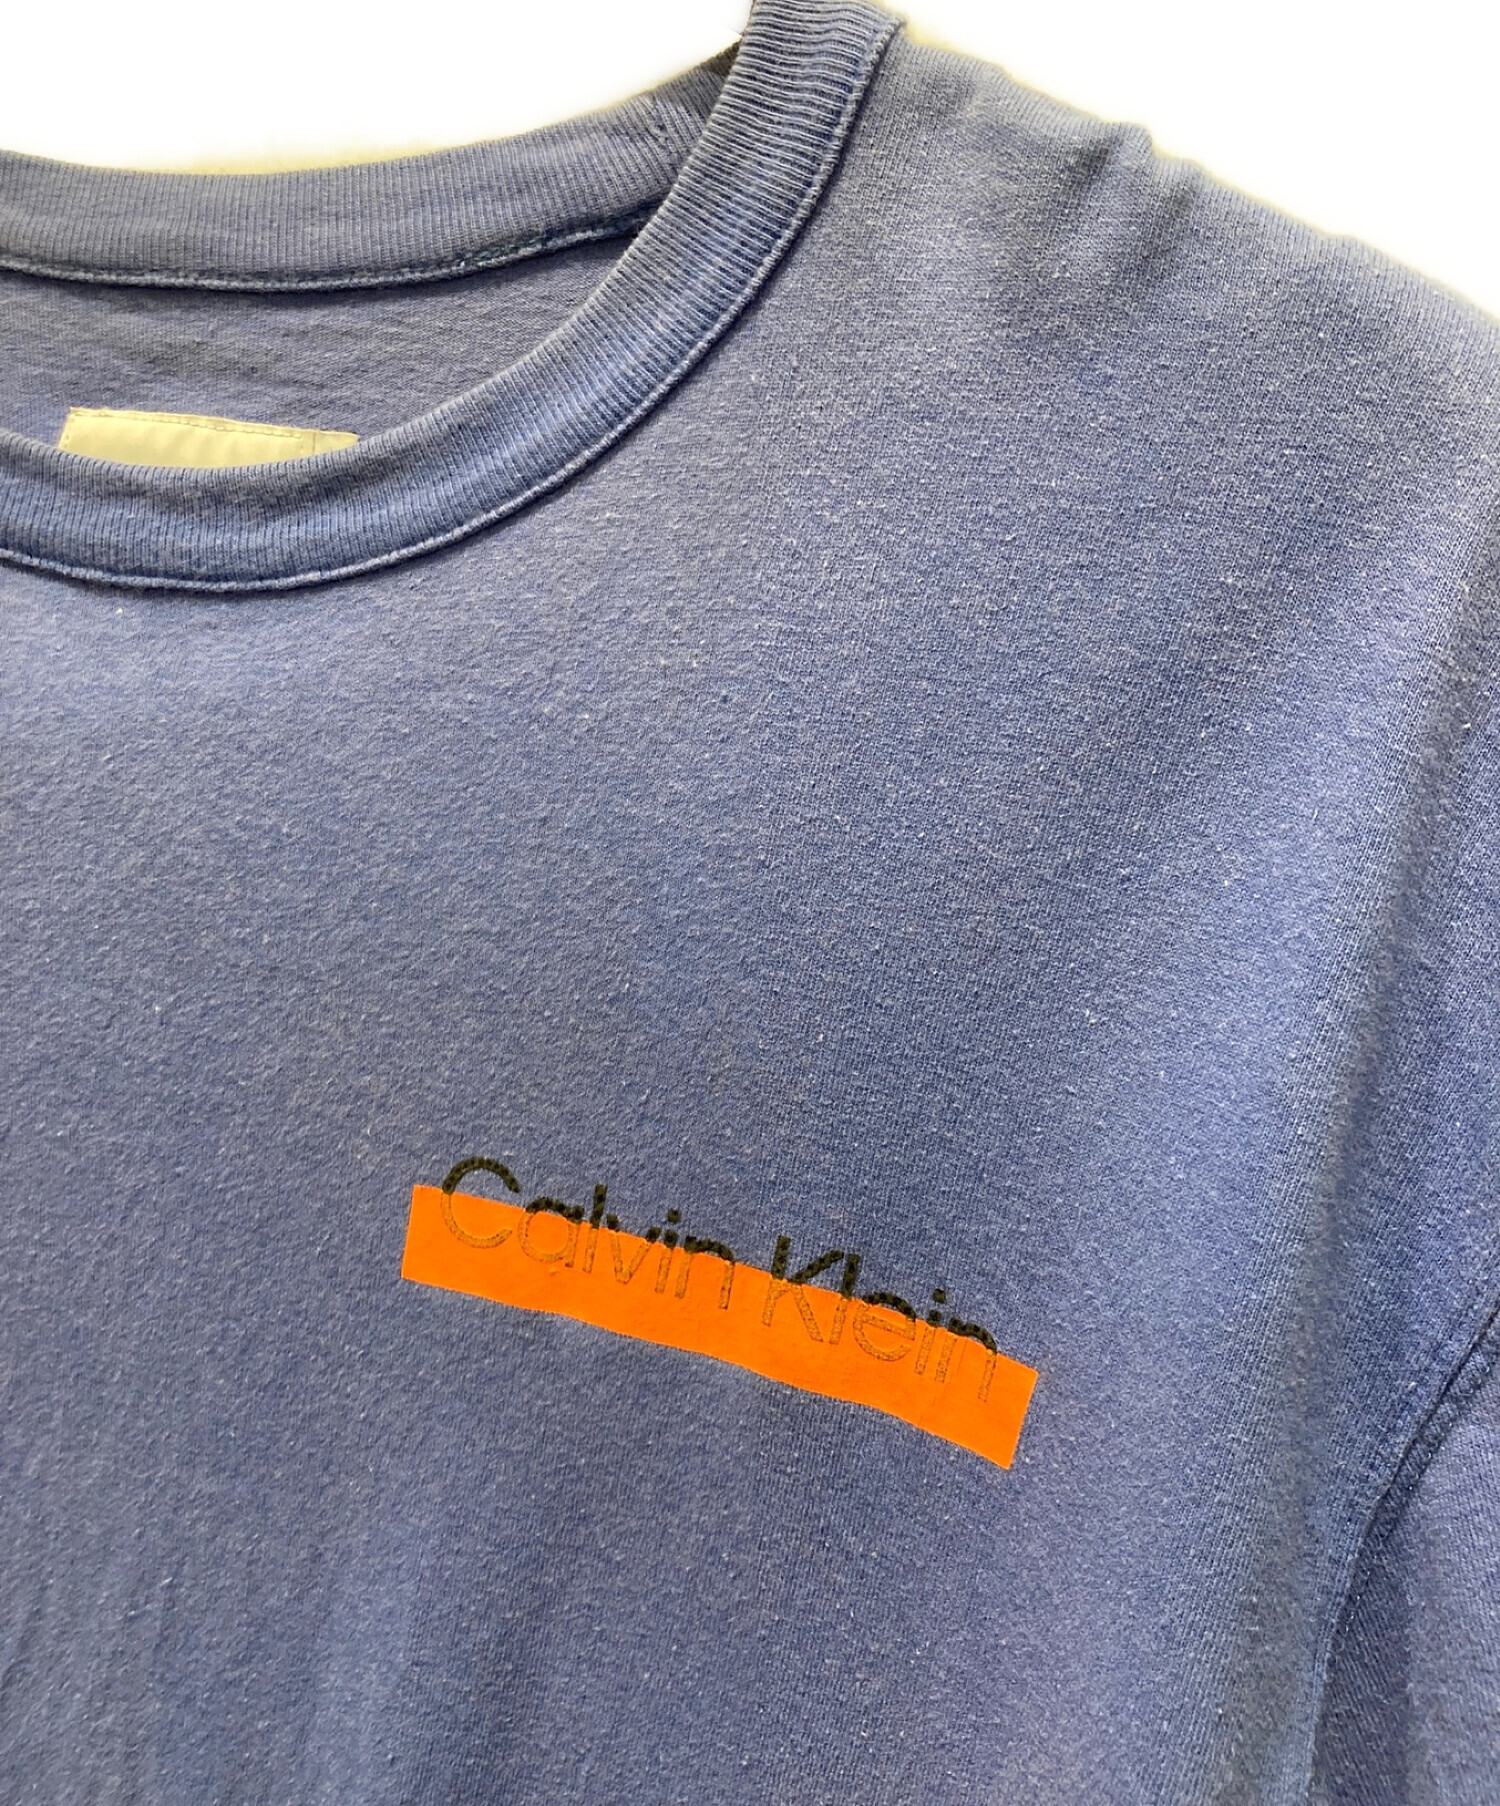 Calvin Klein (カルバンクライン) HERON PRESTON (ヘロンプレストン) Tシャツ ネイビー サイズ:M